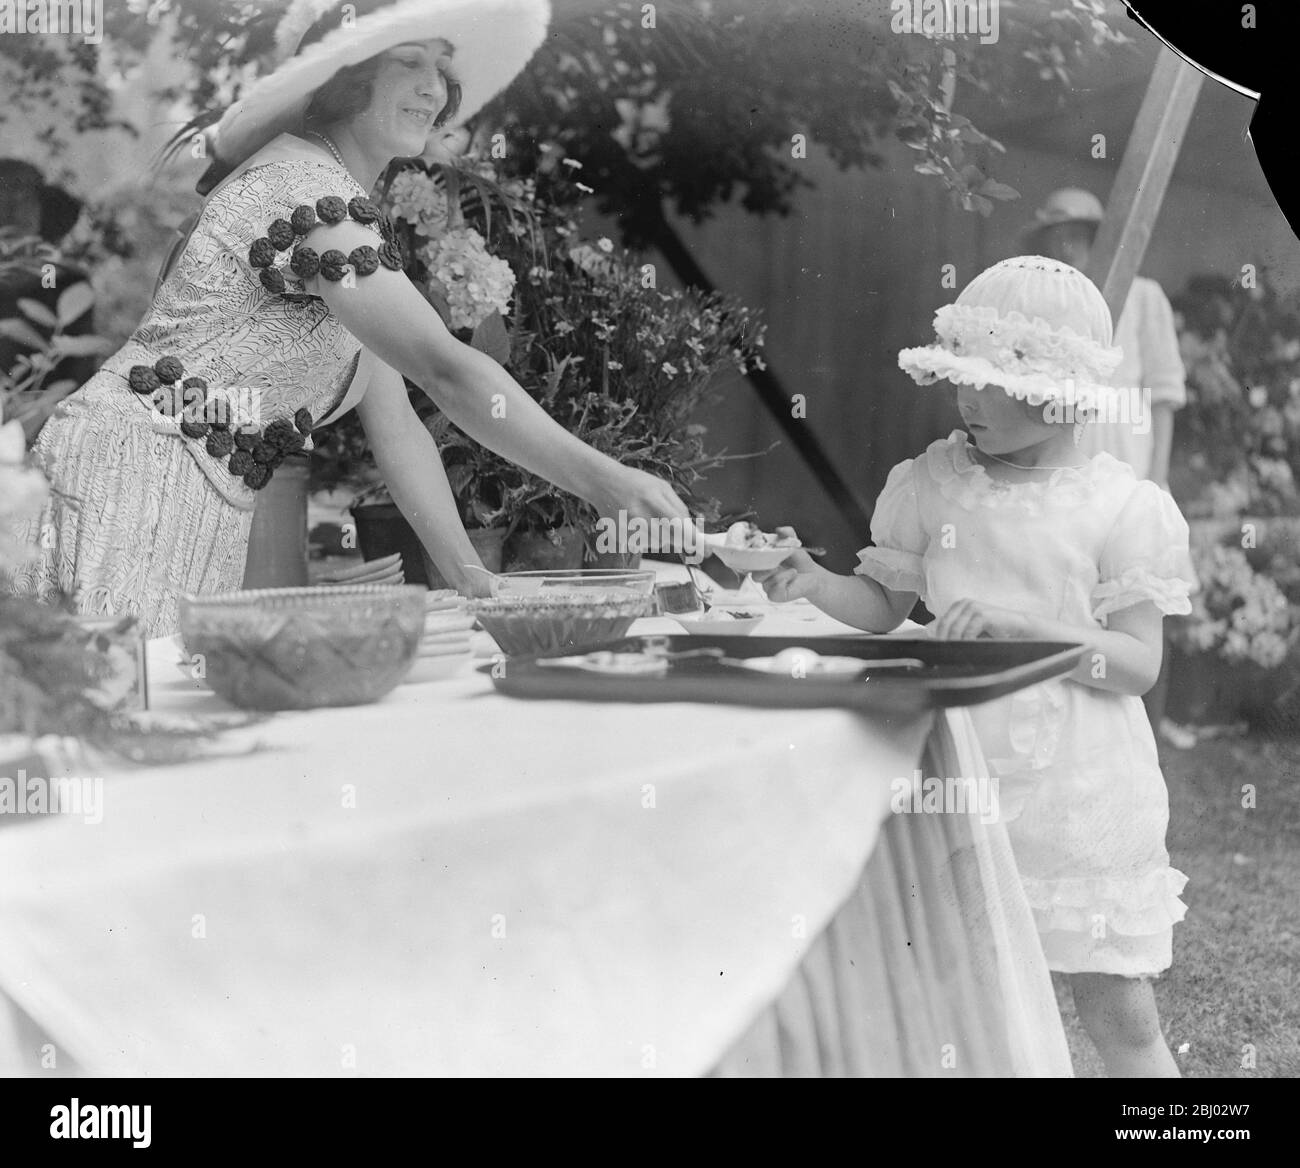 Les gens de la société bien connus aident YWCA ' Blue Fair ' - Viscomtesse de Sibour ( la fille de M. Gordon Selfridge ) - 28 juin 1922 Banque D'Images